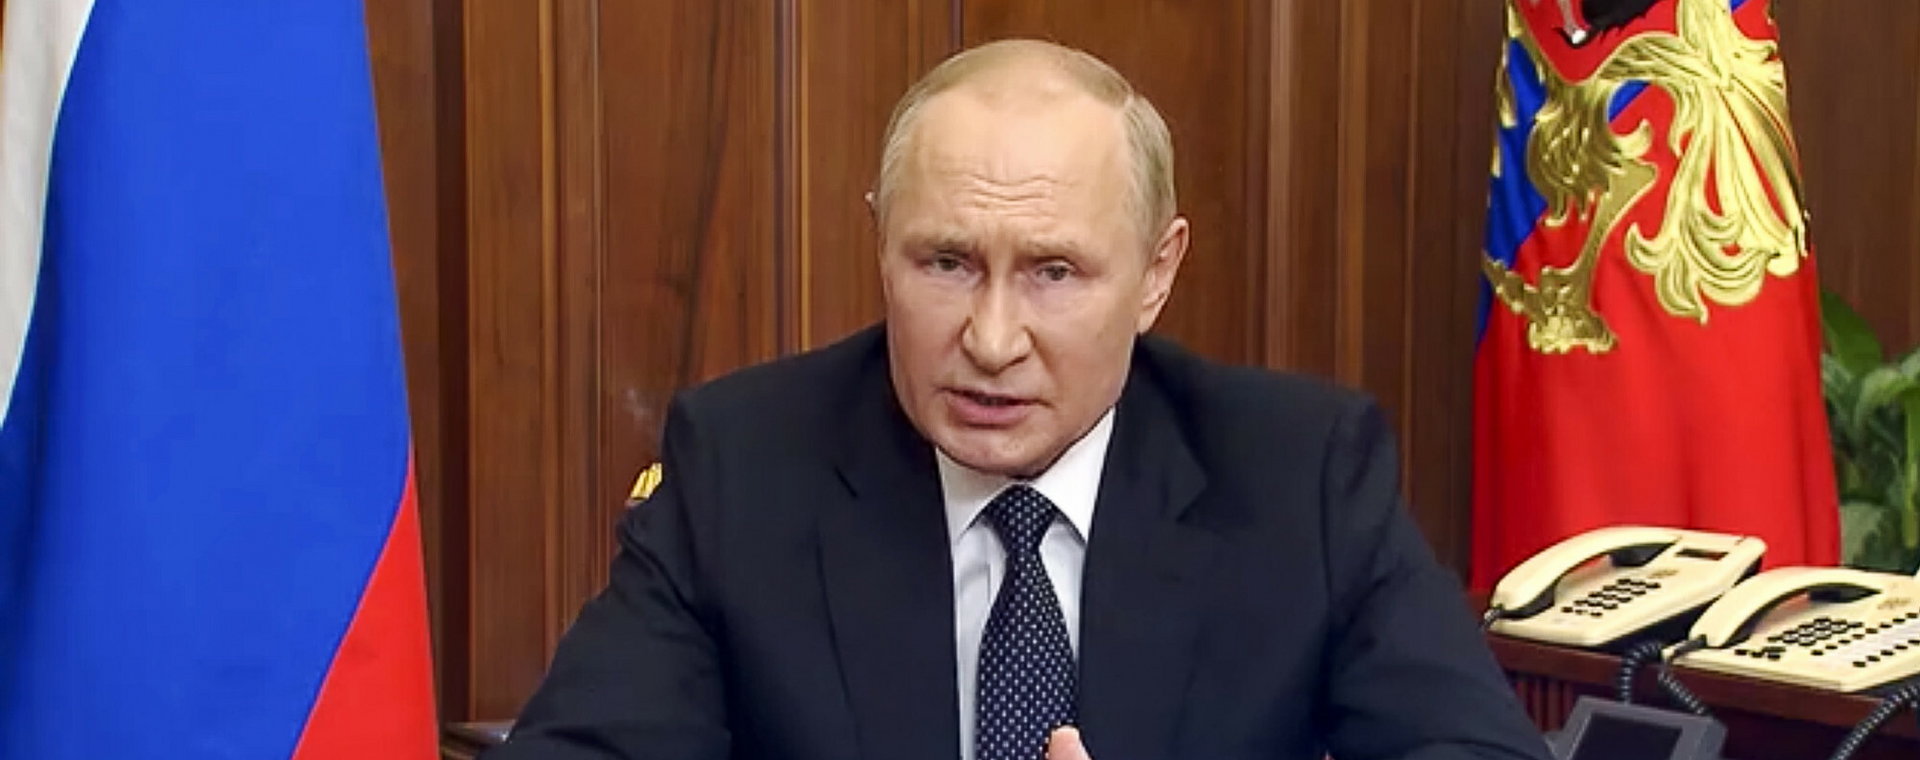 Prezydent Rosji Władimir Putin w czasie wygłaszania orędzia do narodu